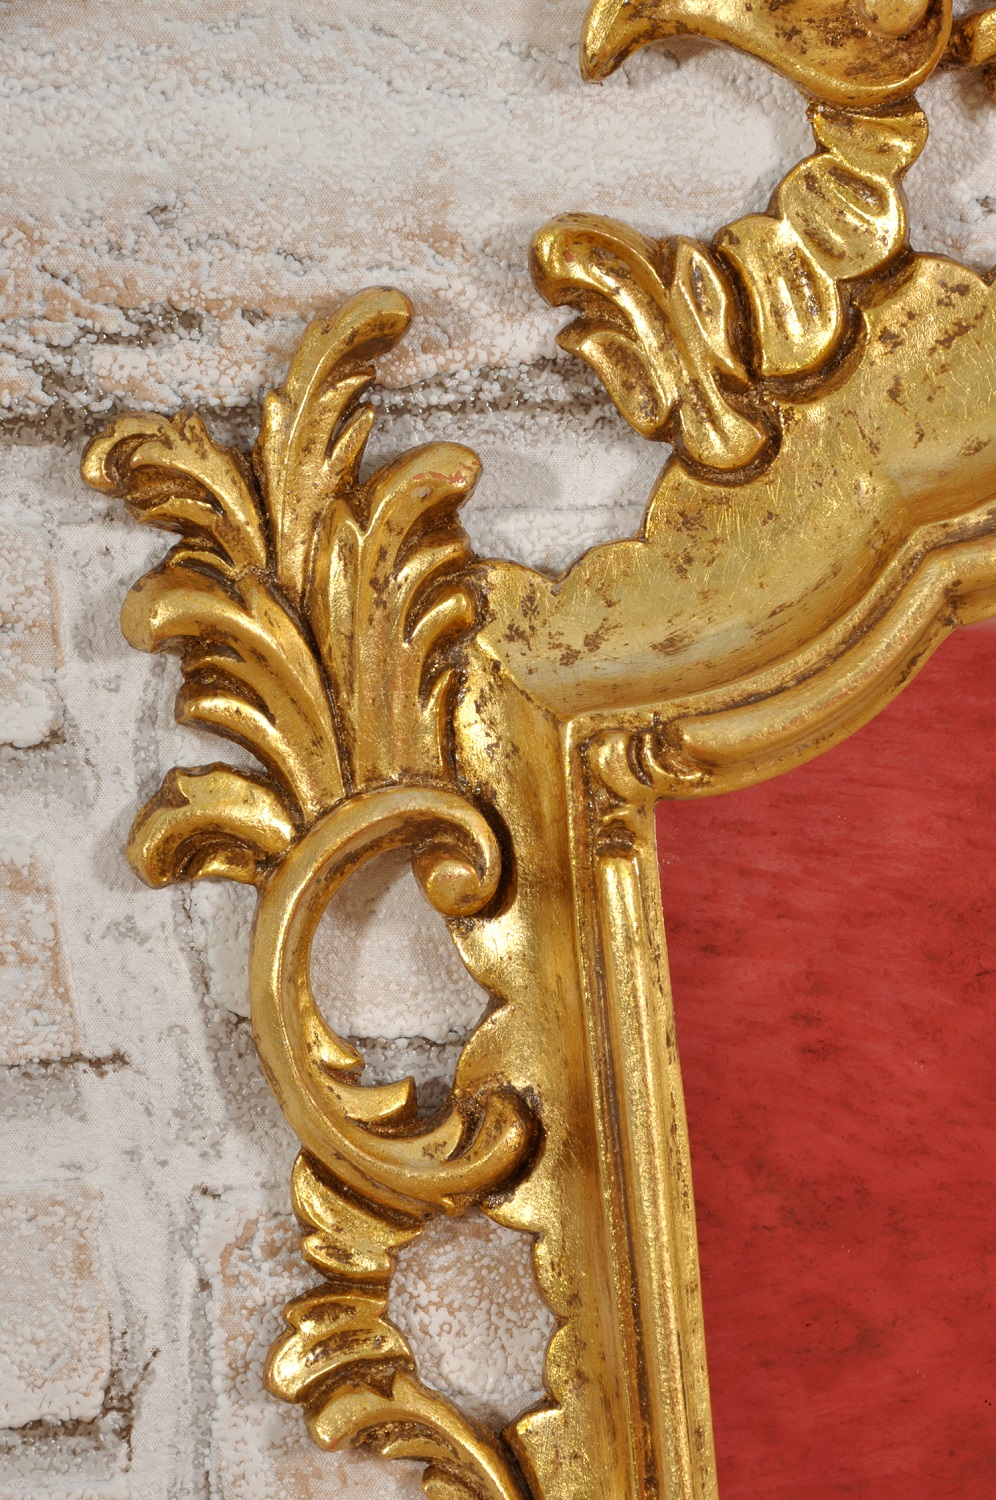 nel laboratorio di alta ebanisteria Vangelista mobili è stata costruita la specchiera ventola veneziana in stile Luigi XV con raffinati ricci e volute arredo di lusso in stile barocco